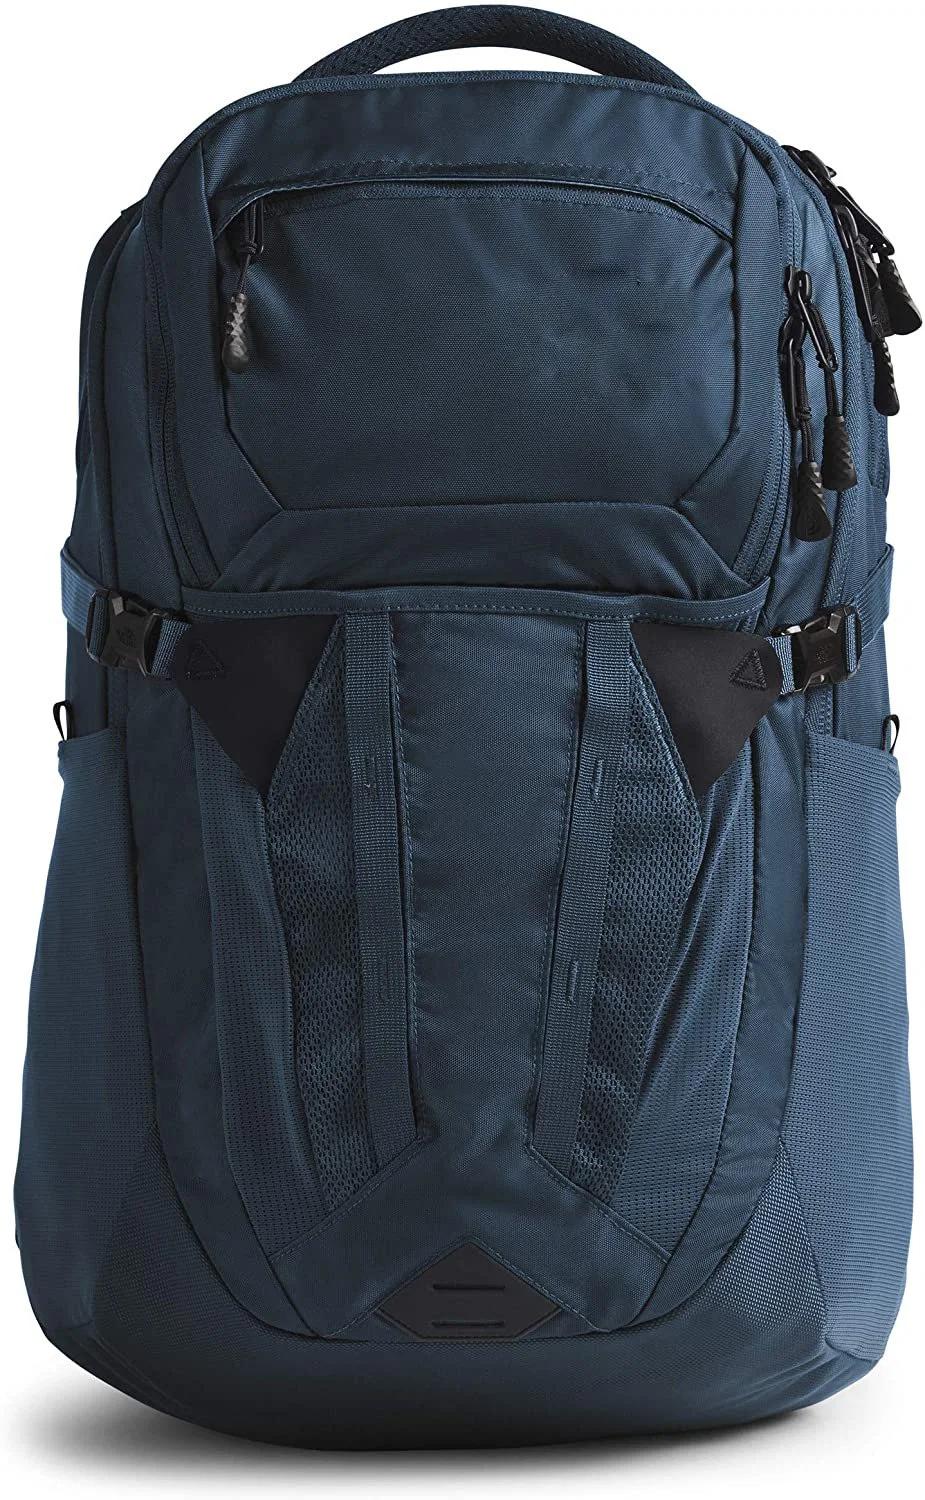 Big Room Zipper Backpack Classic Daliy Camping Hiking and School Backpack